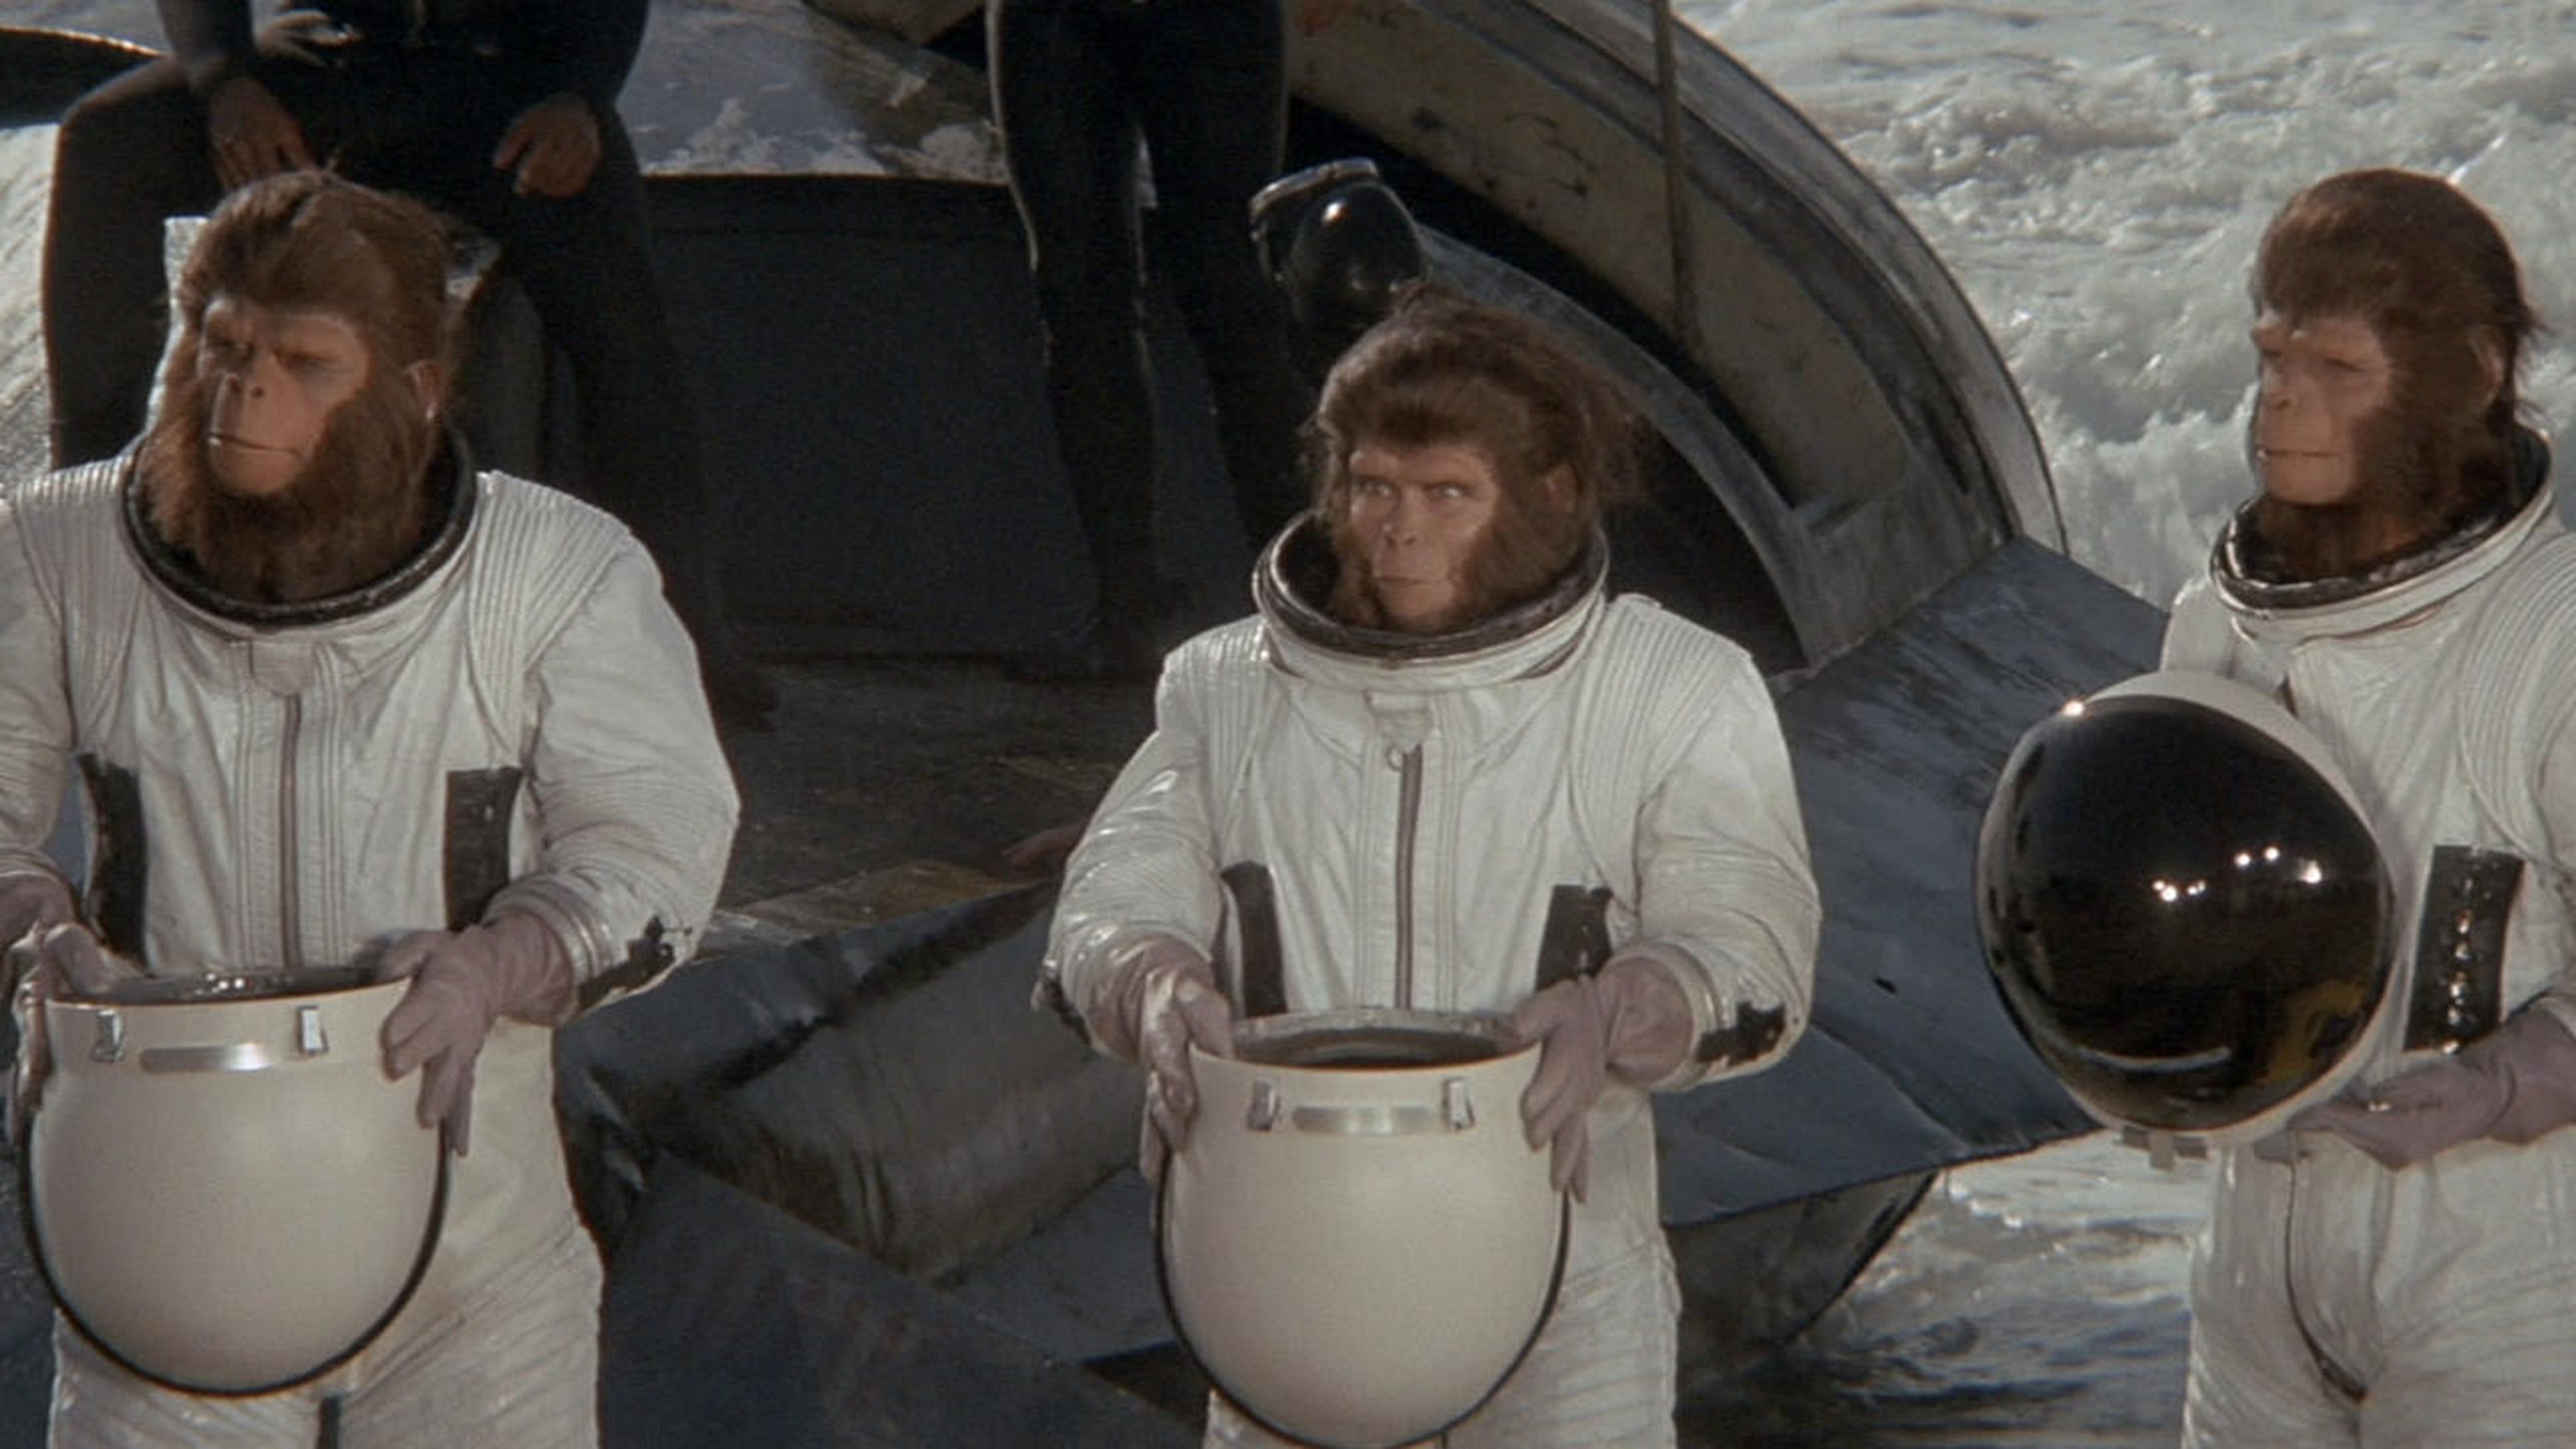 Huida del planeta de los simios (1971)